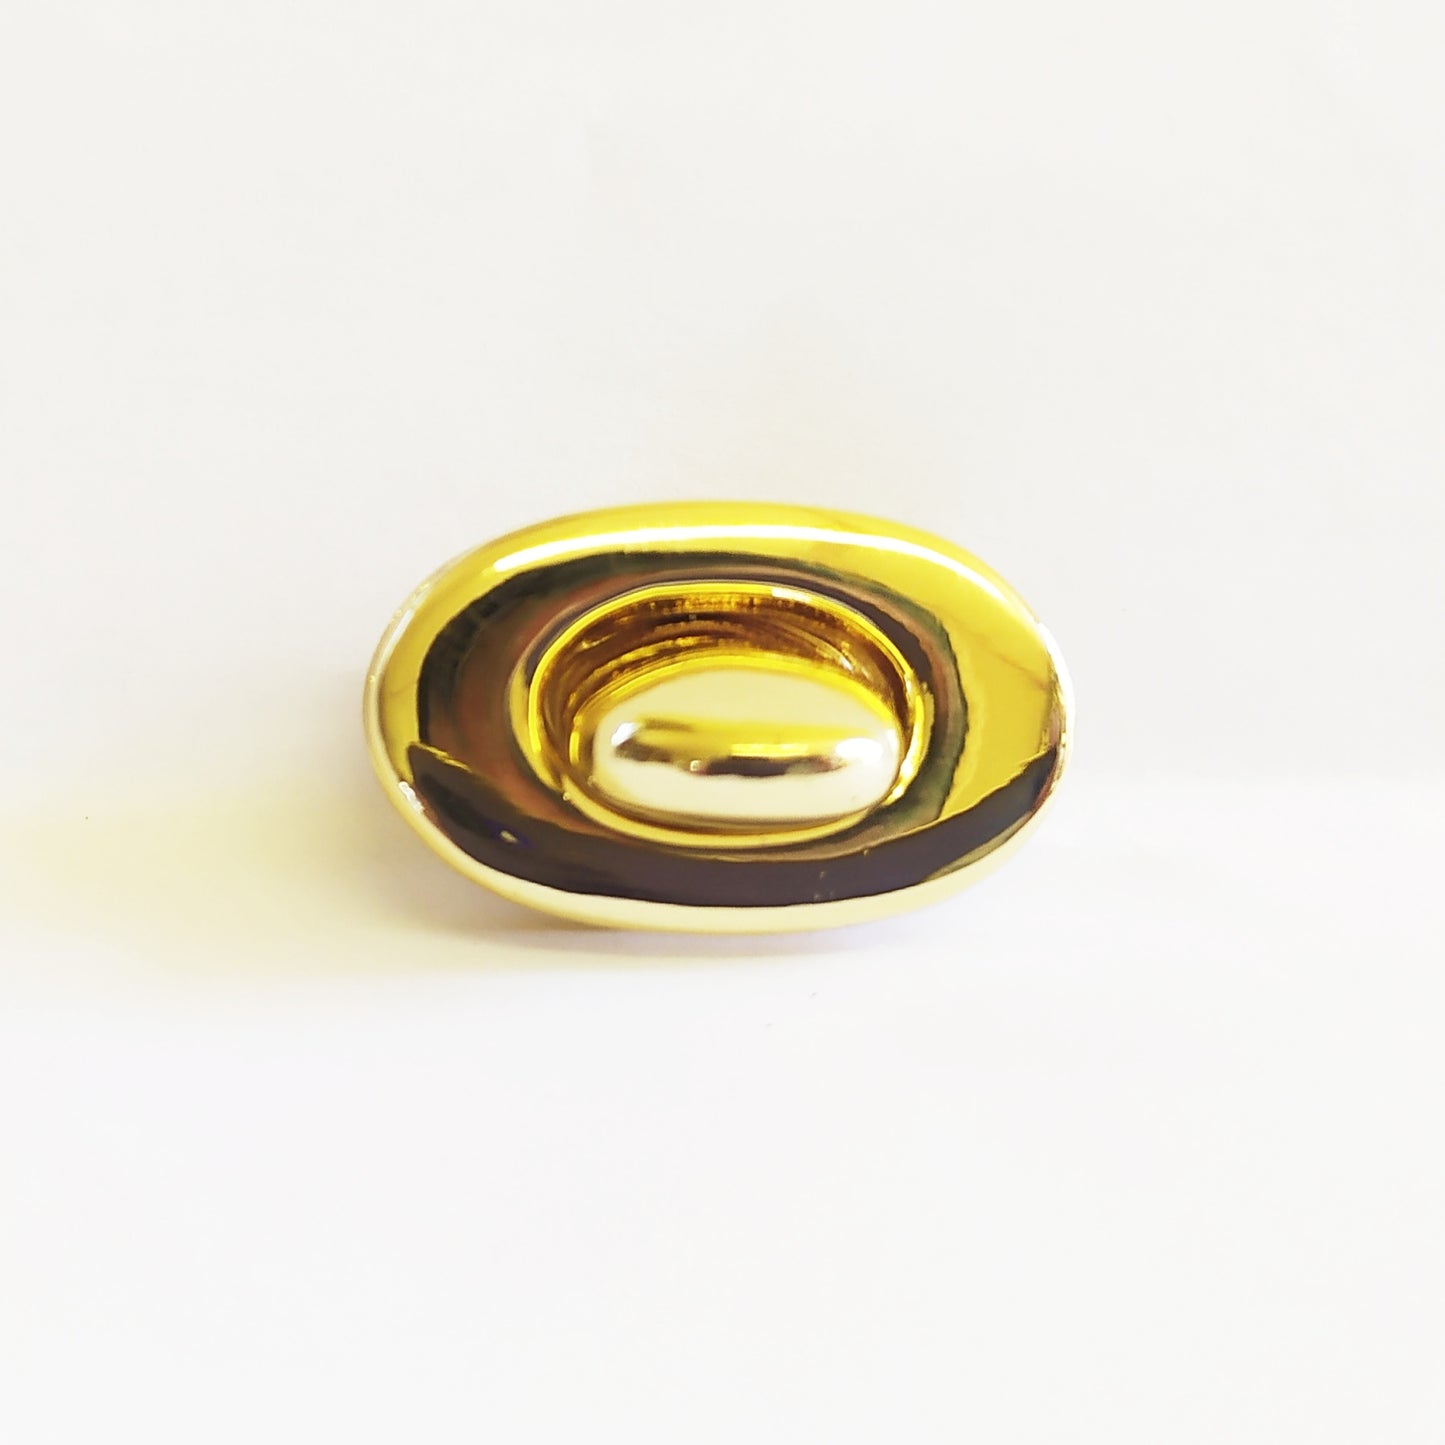 Small Oval Senatori Turn Button - Gold